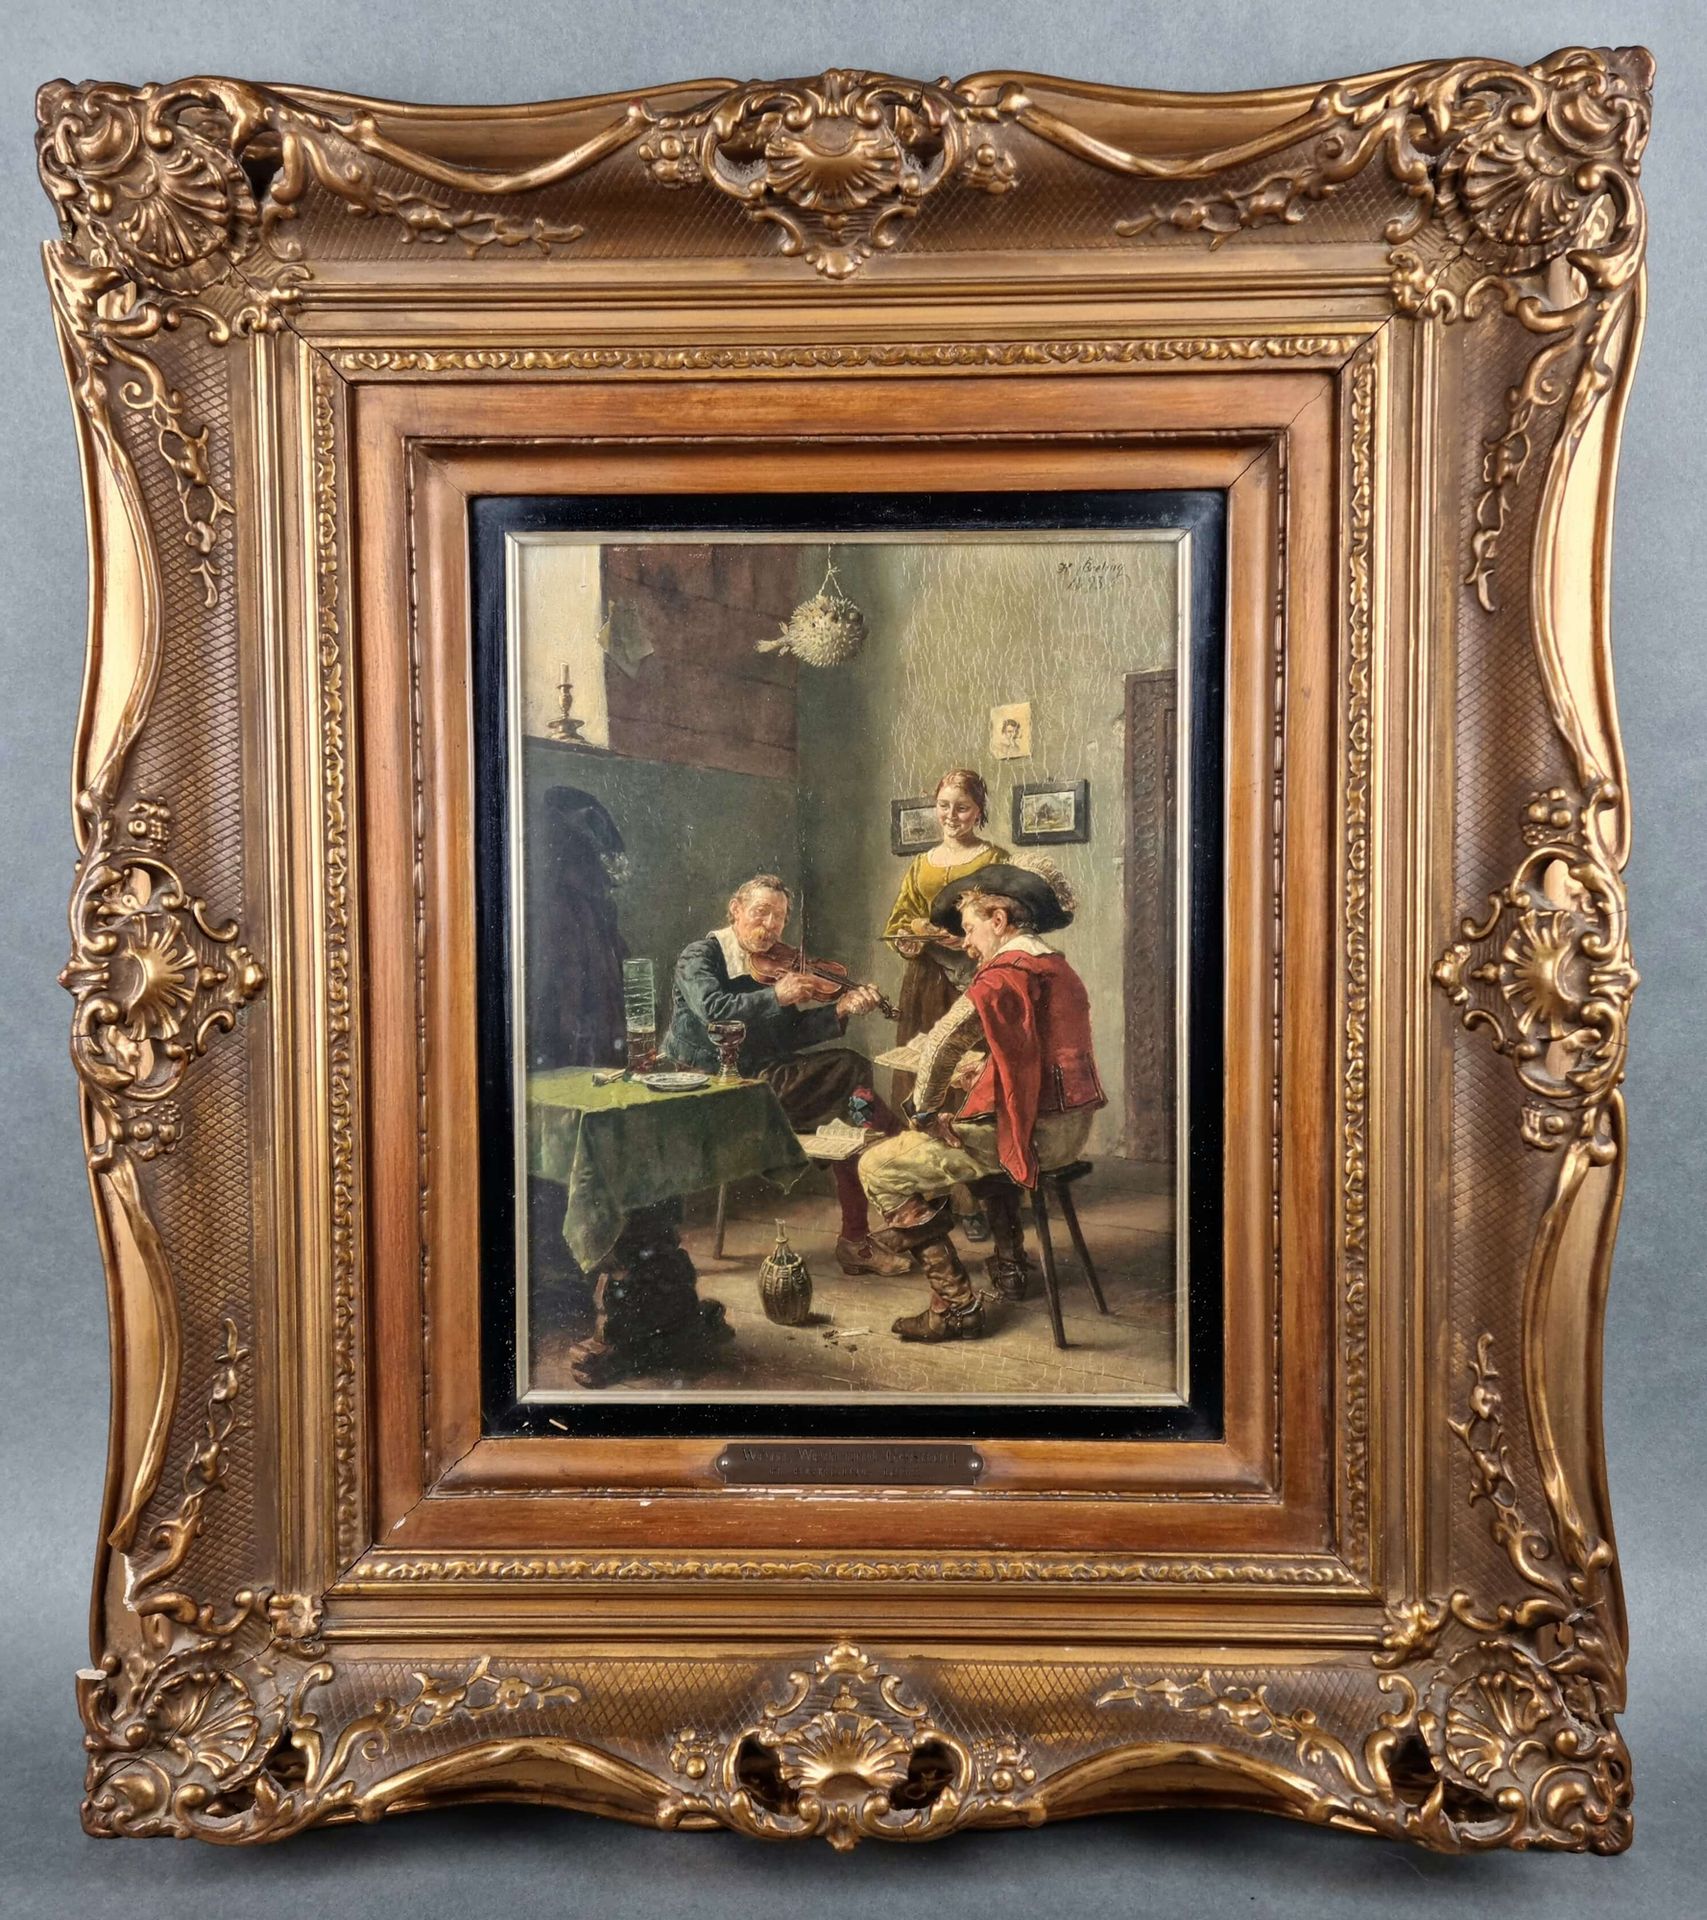 BRELING Heinrich (1849-1914) 签署了Heinrich Breling "Scène de genre "的布面油画。日期为1893年&hellip;